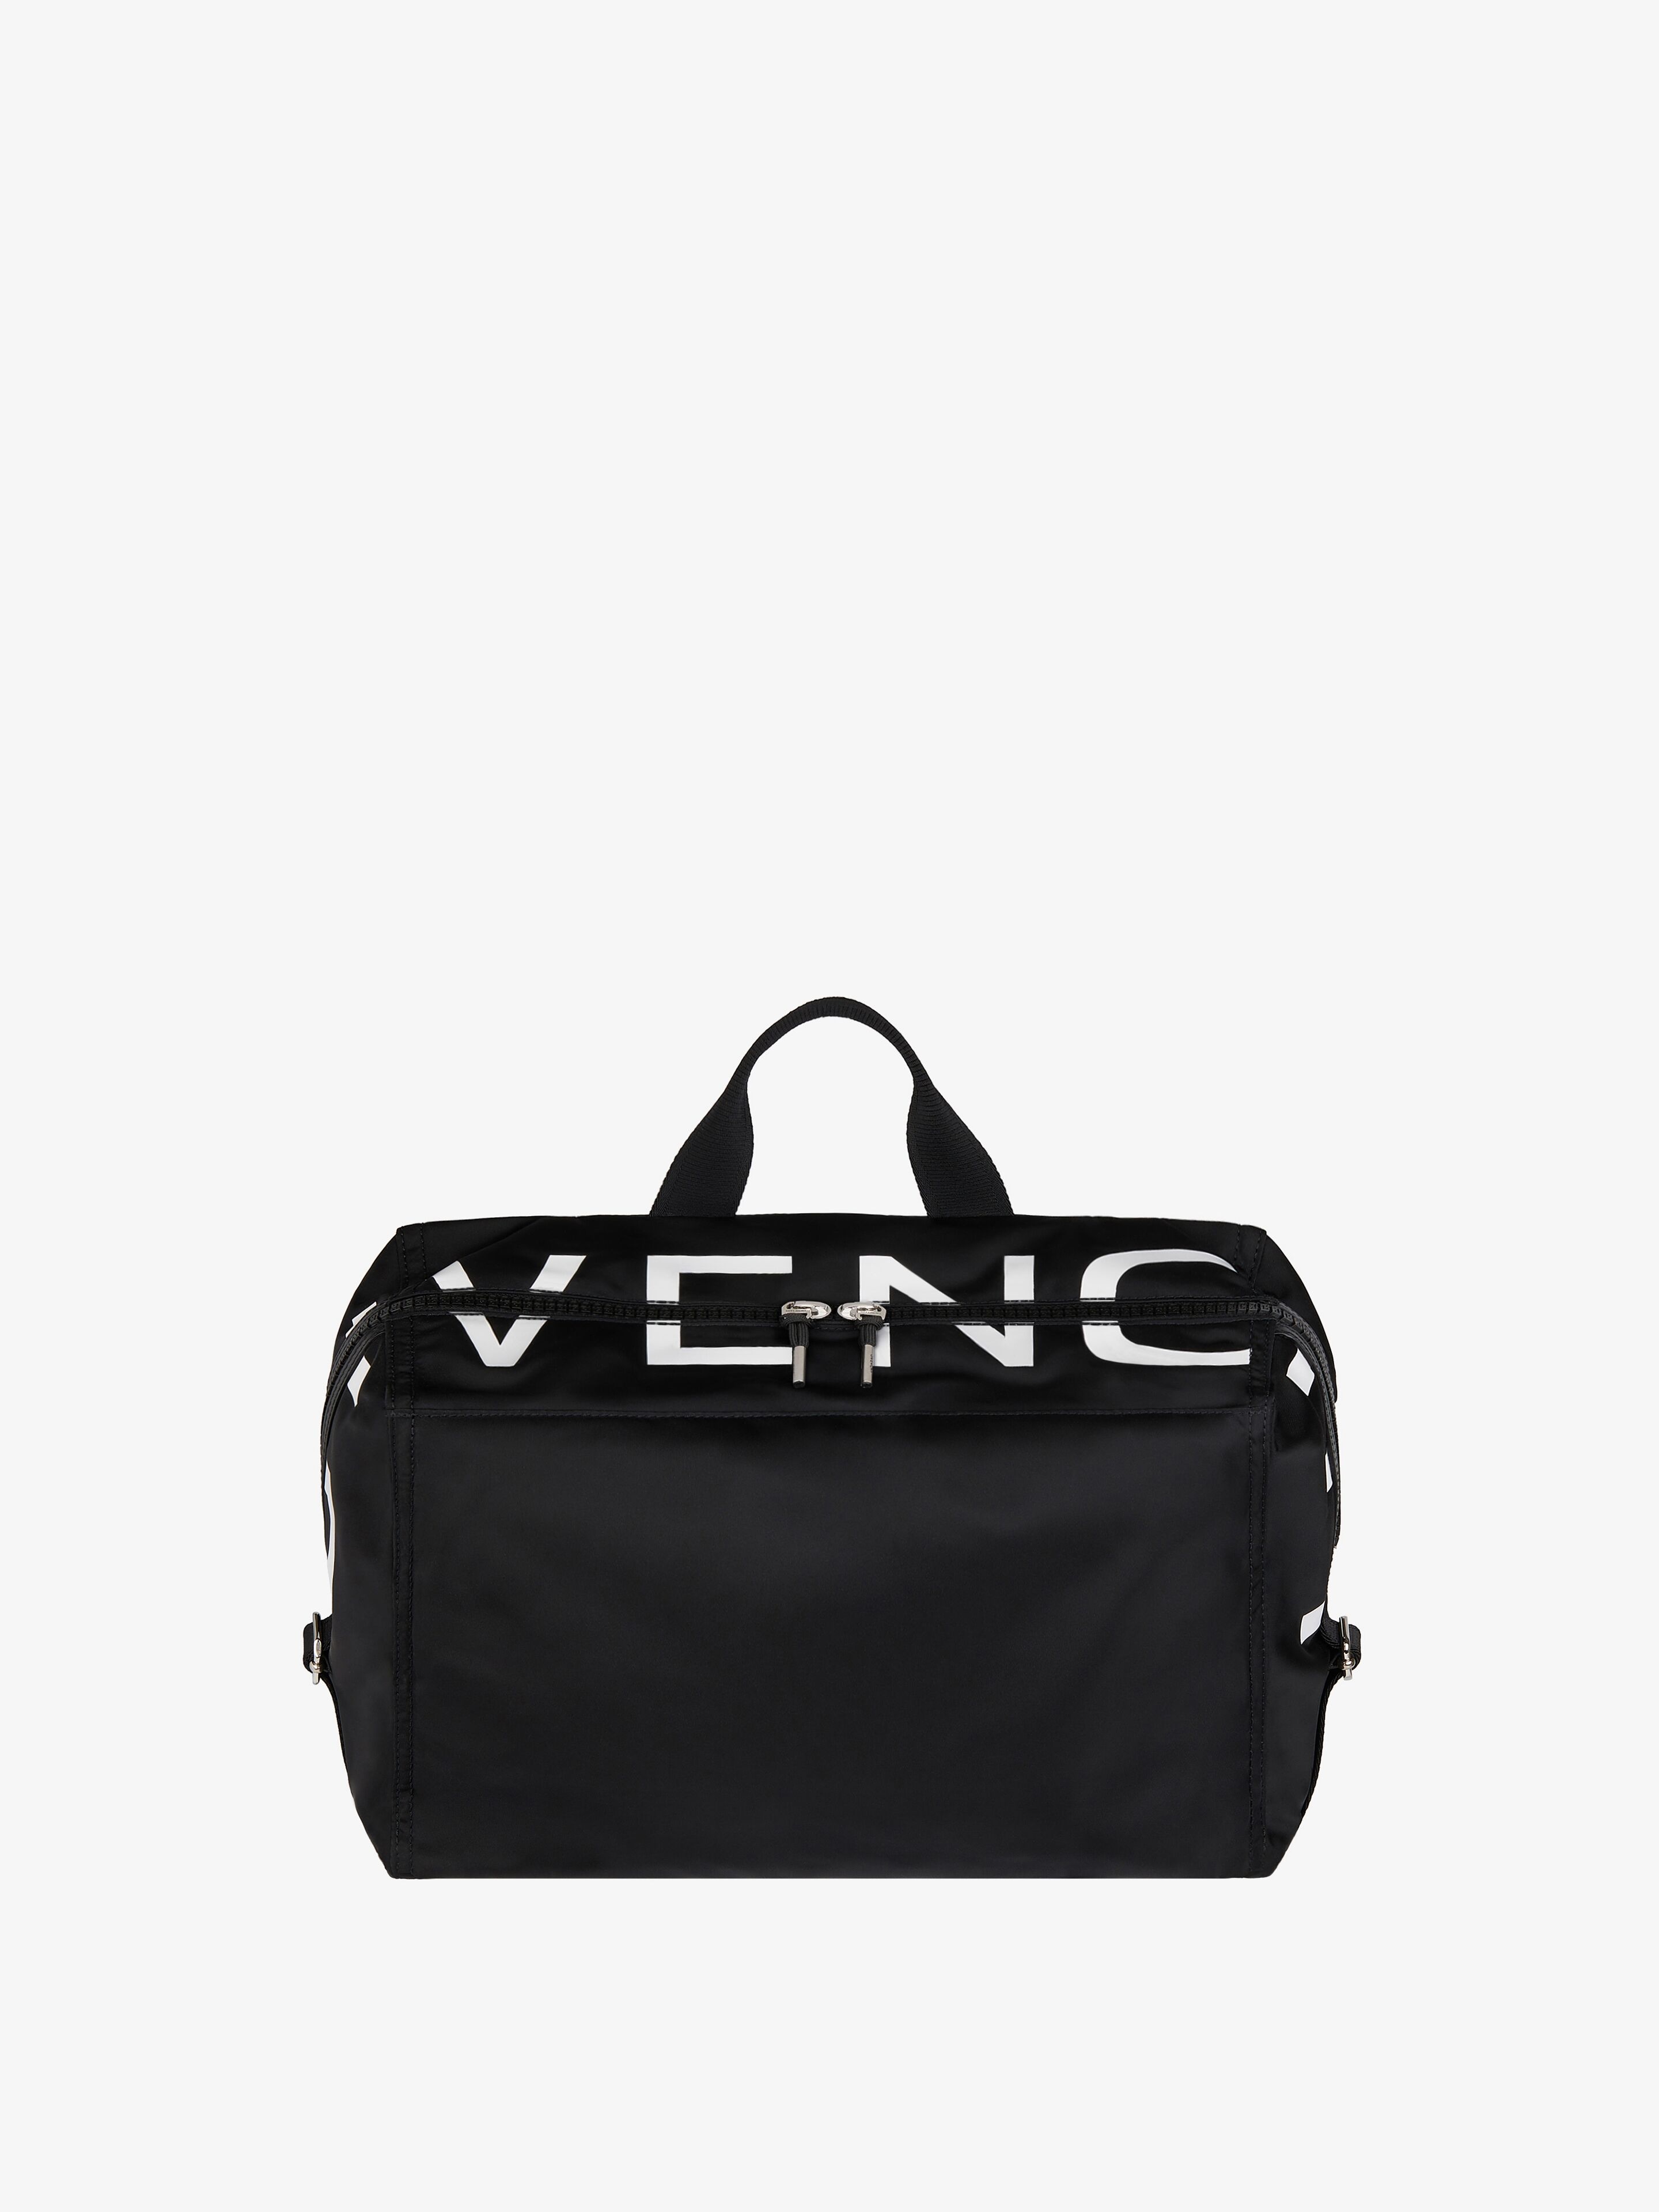 Givenchy Pandora Medium Bag In Multicolor